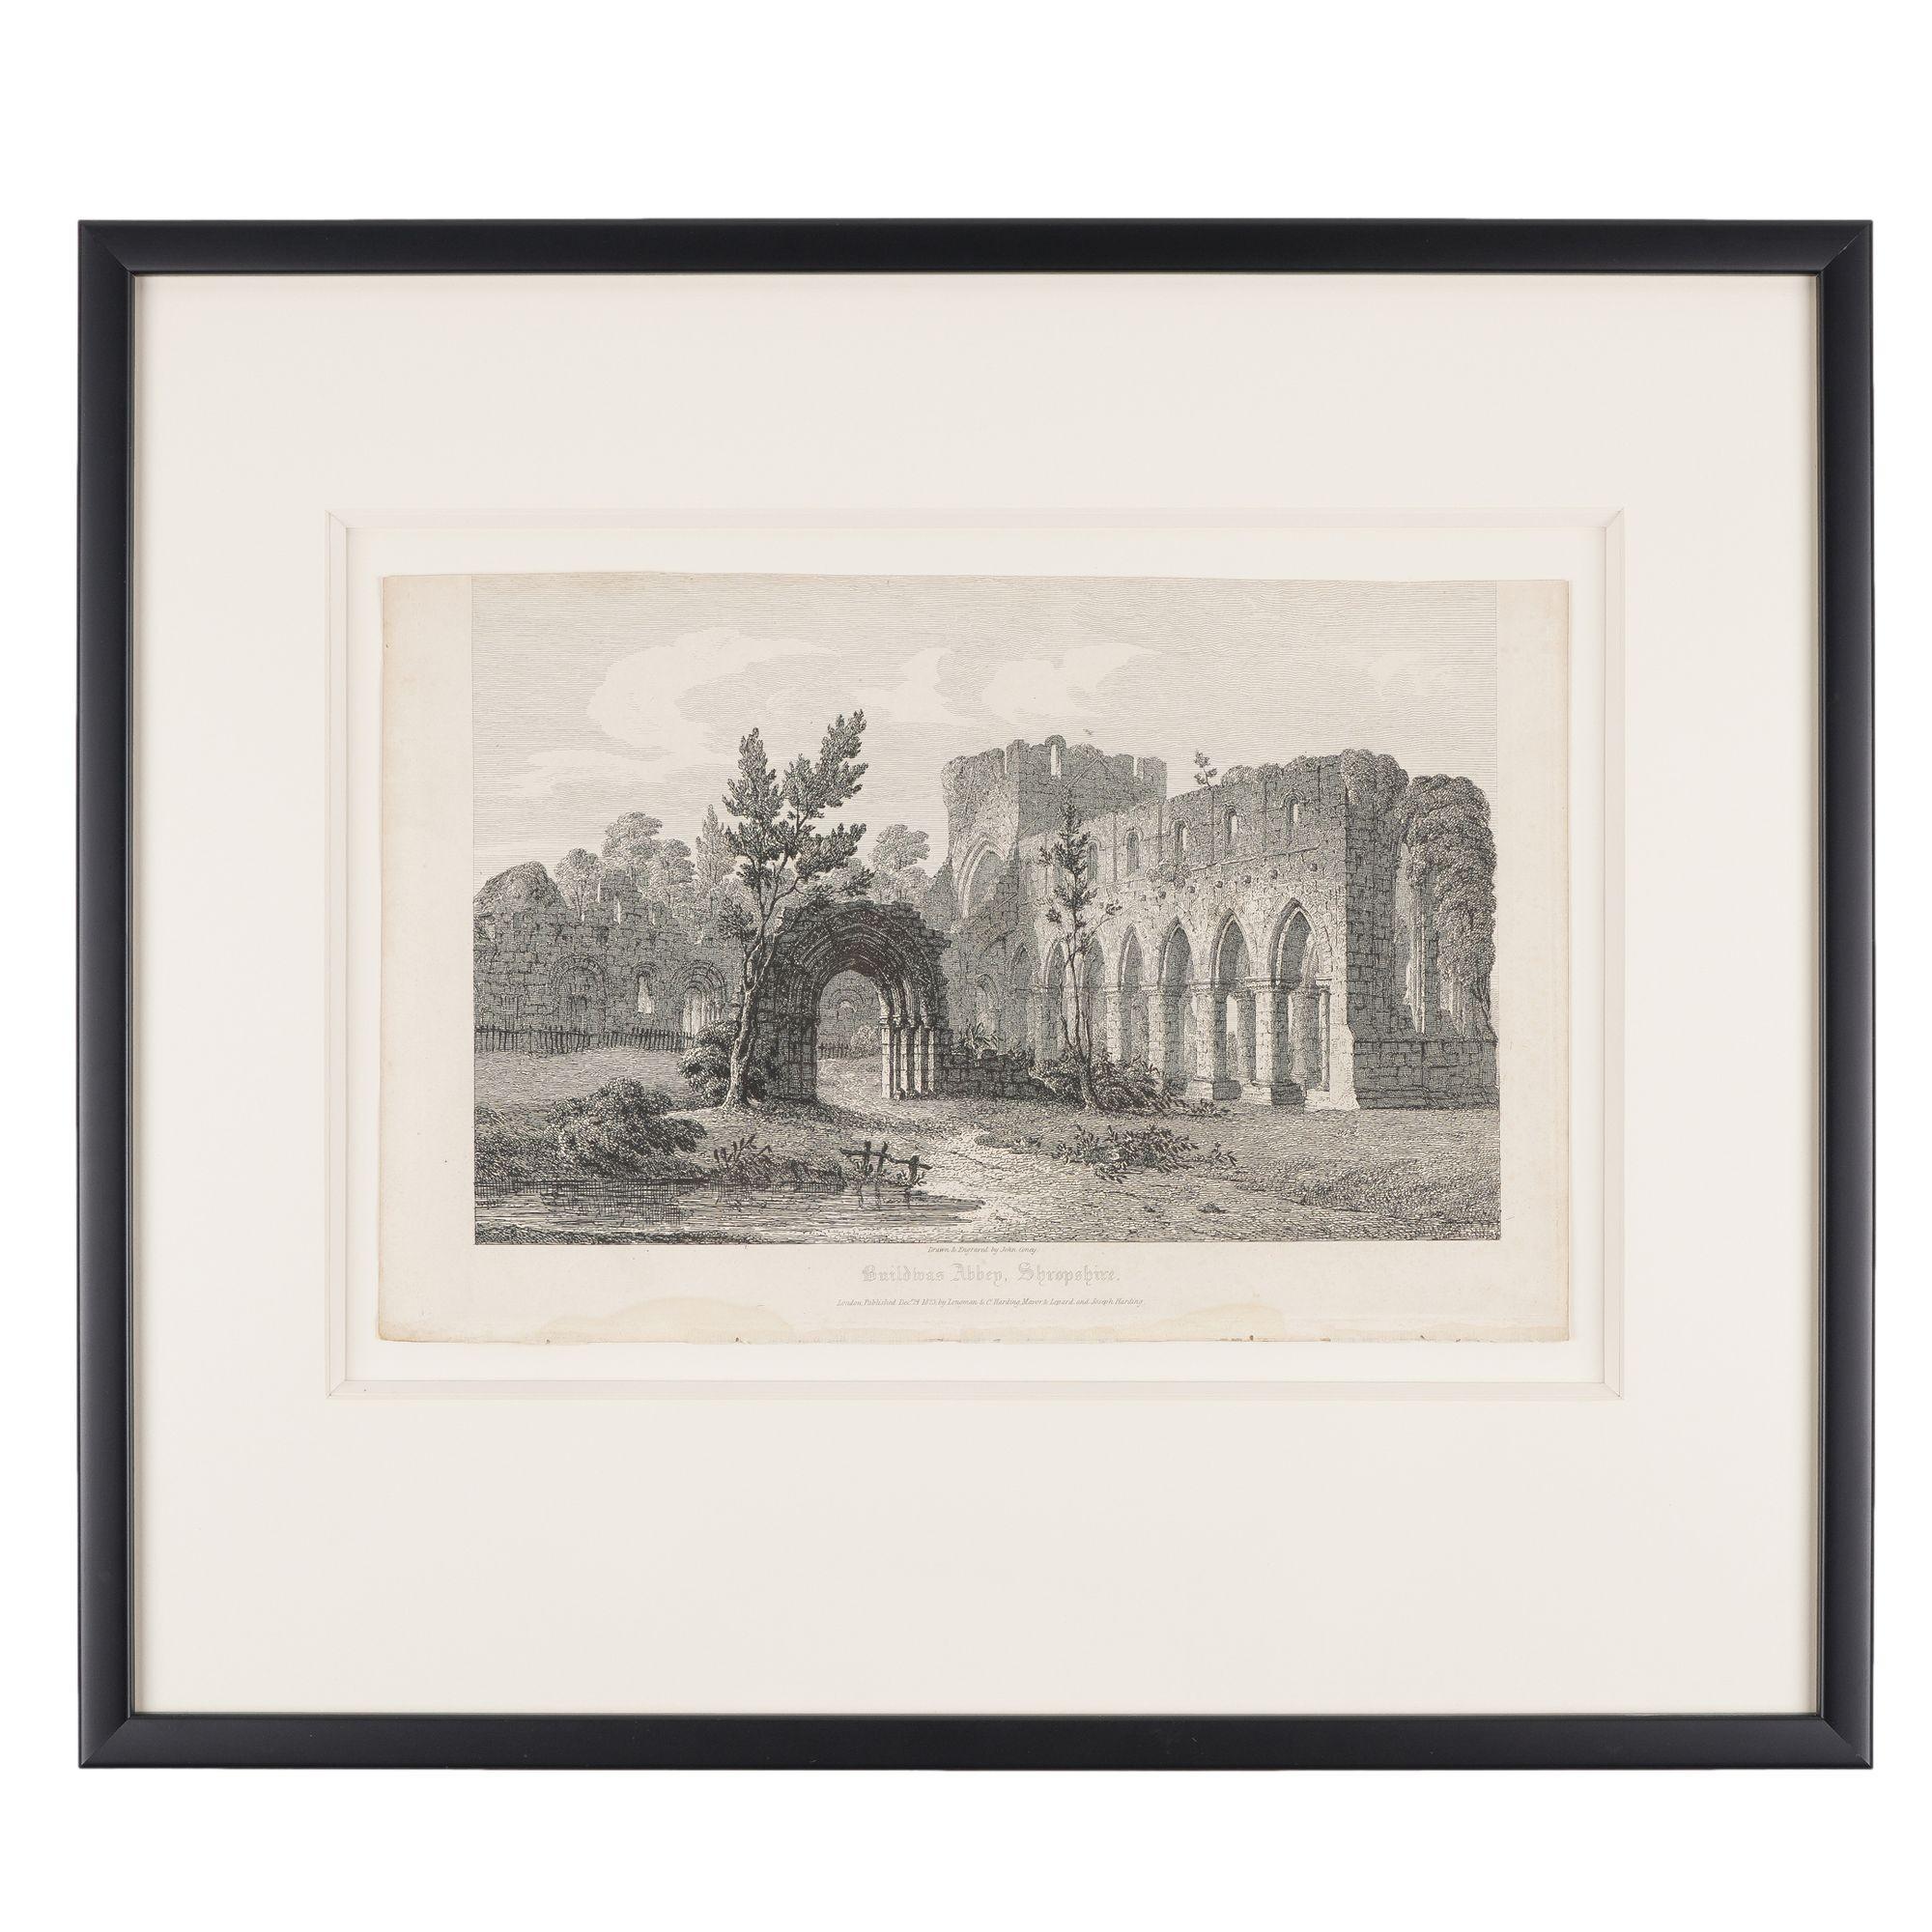 Ensemble de quatre gravures sur cuivre encadrées représentant des édifices ecclésiastiques gothiques anglais. Gravé et imprimé par John Coney, signé dans les planches, et publié à Londres en 1819. Les titres des ouvrages sont les suivants :

Abbaye